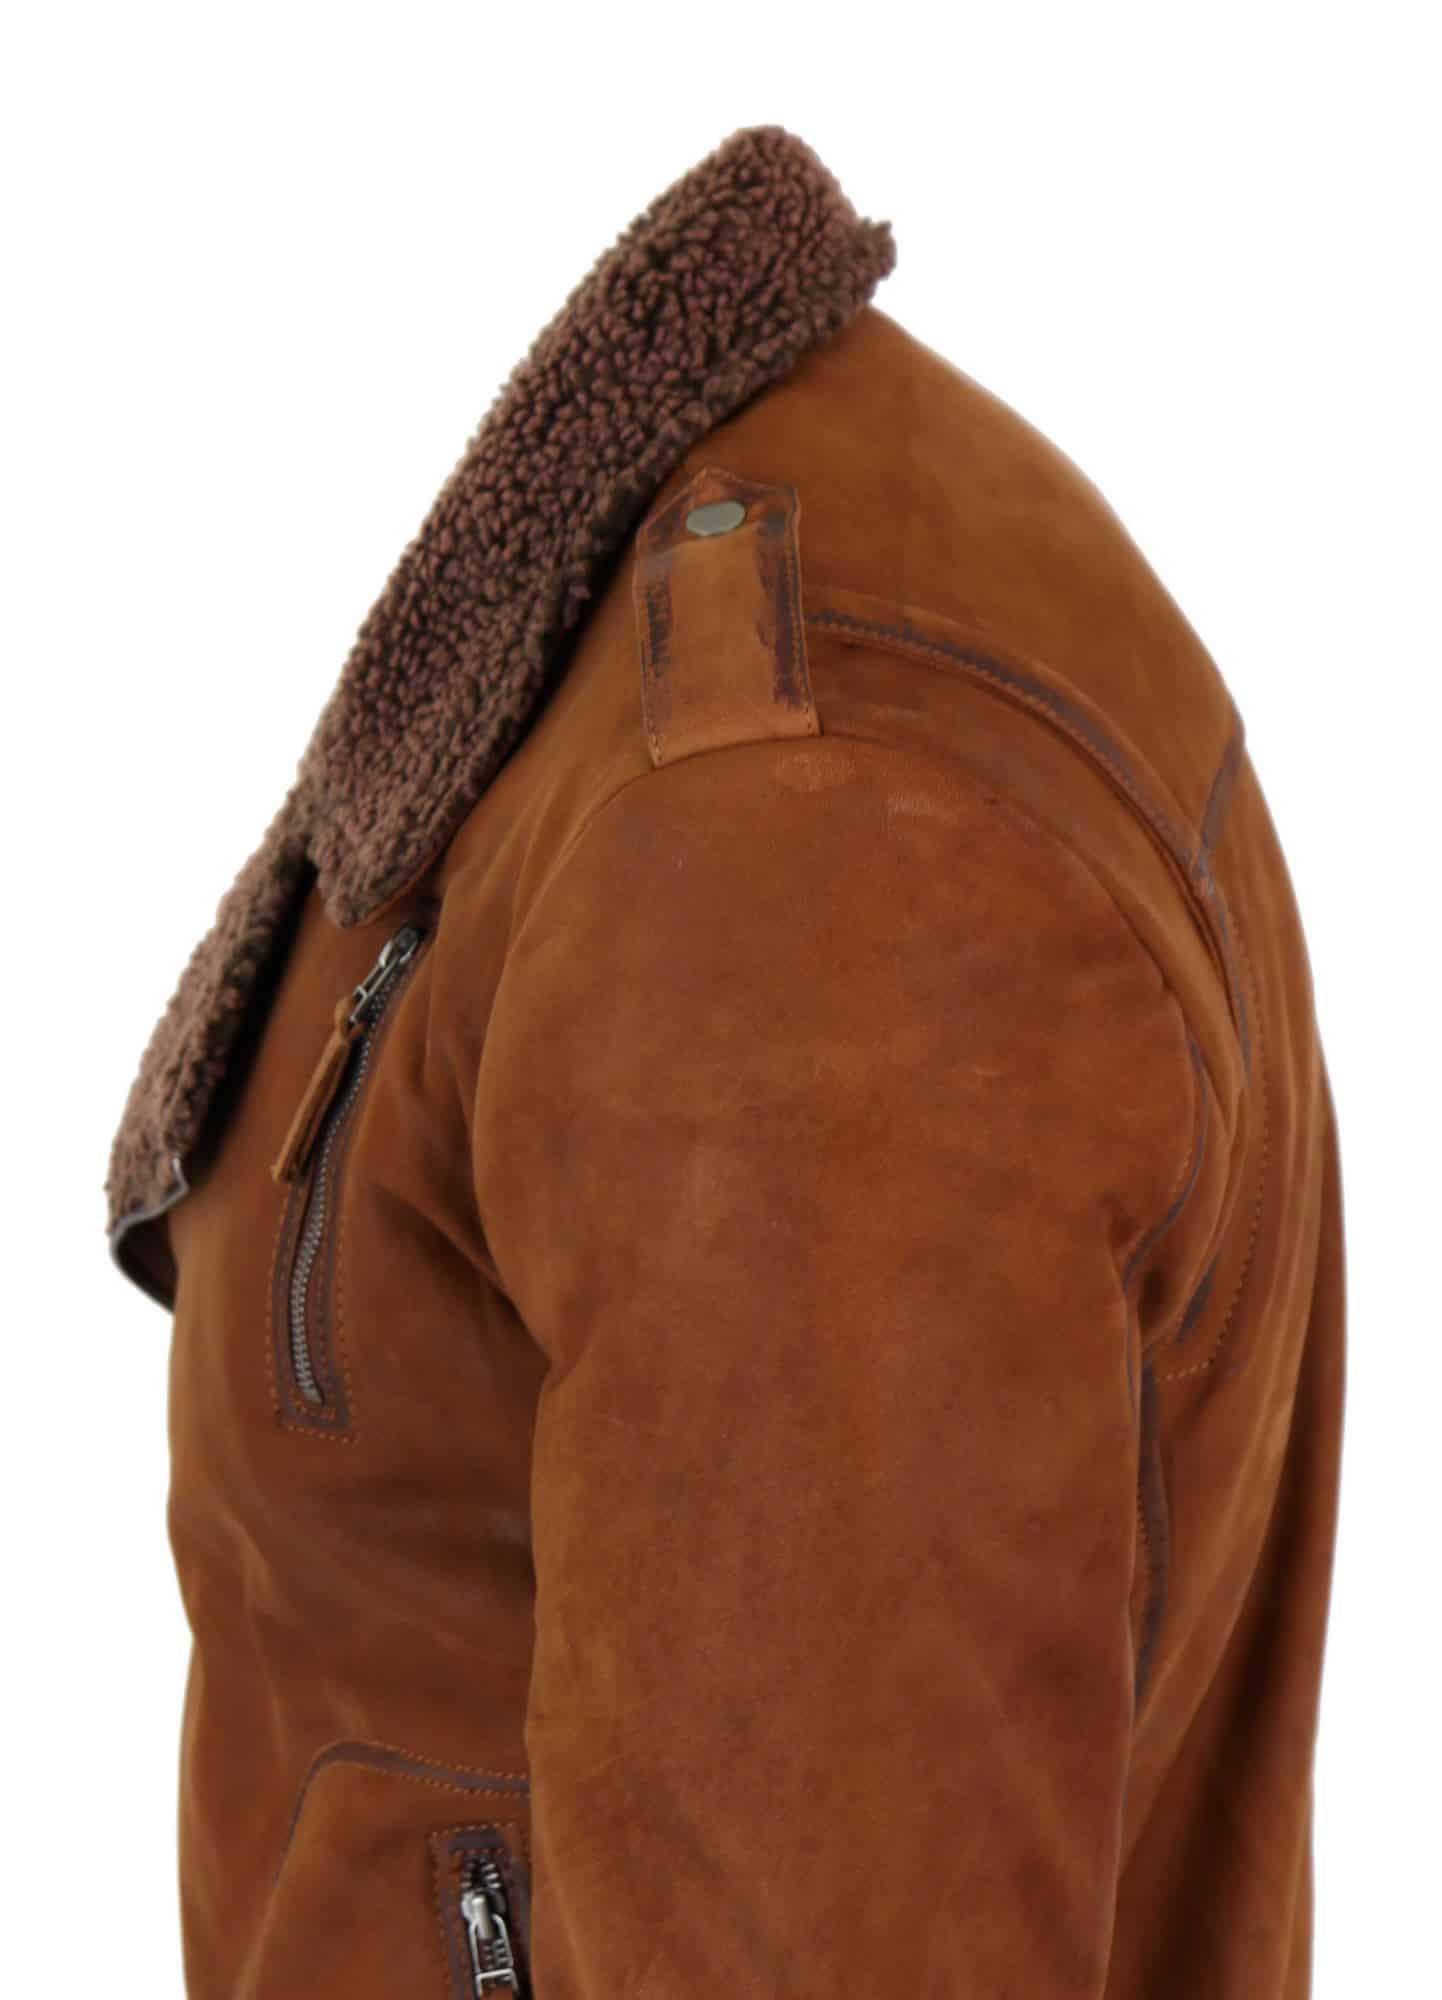 Real Leather Men's Cross-Zip Biker Jacket, Fleece Lined-Tan: Buy Online -  Happy Gentleman United States